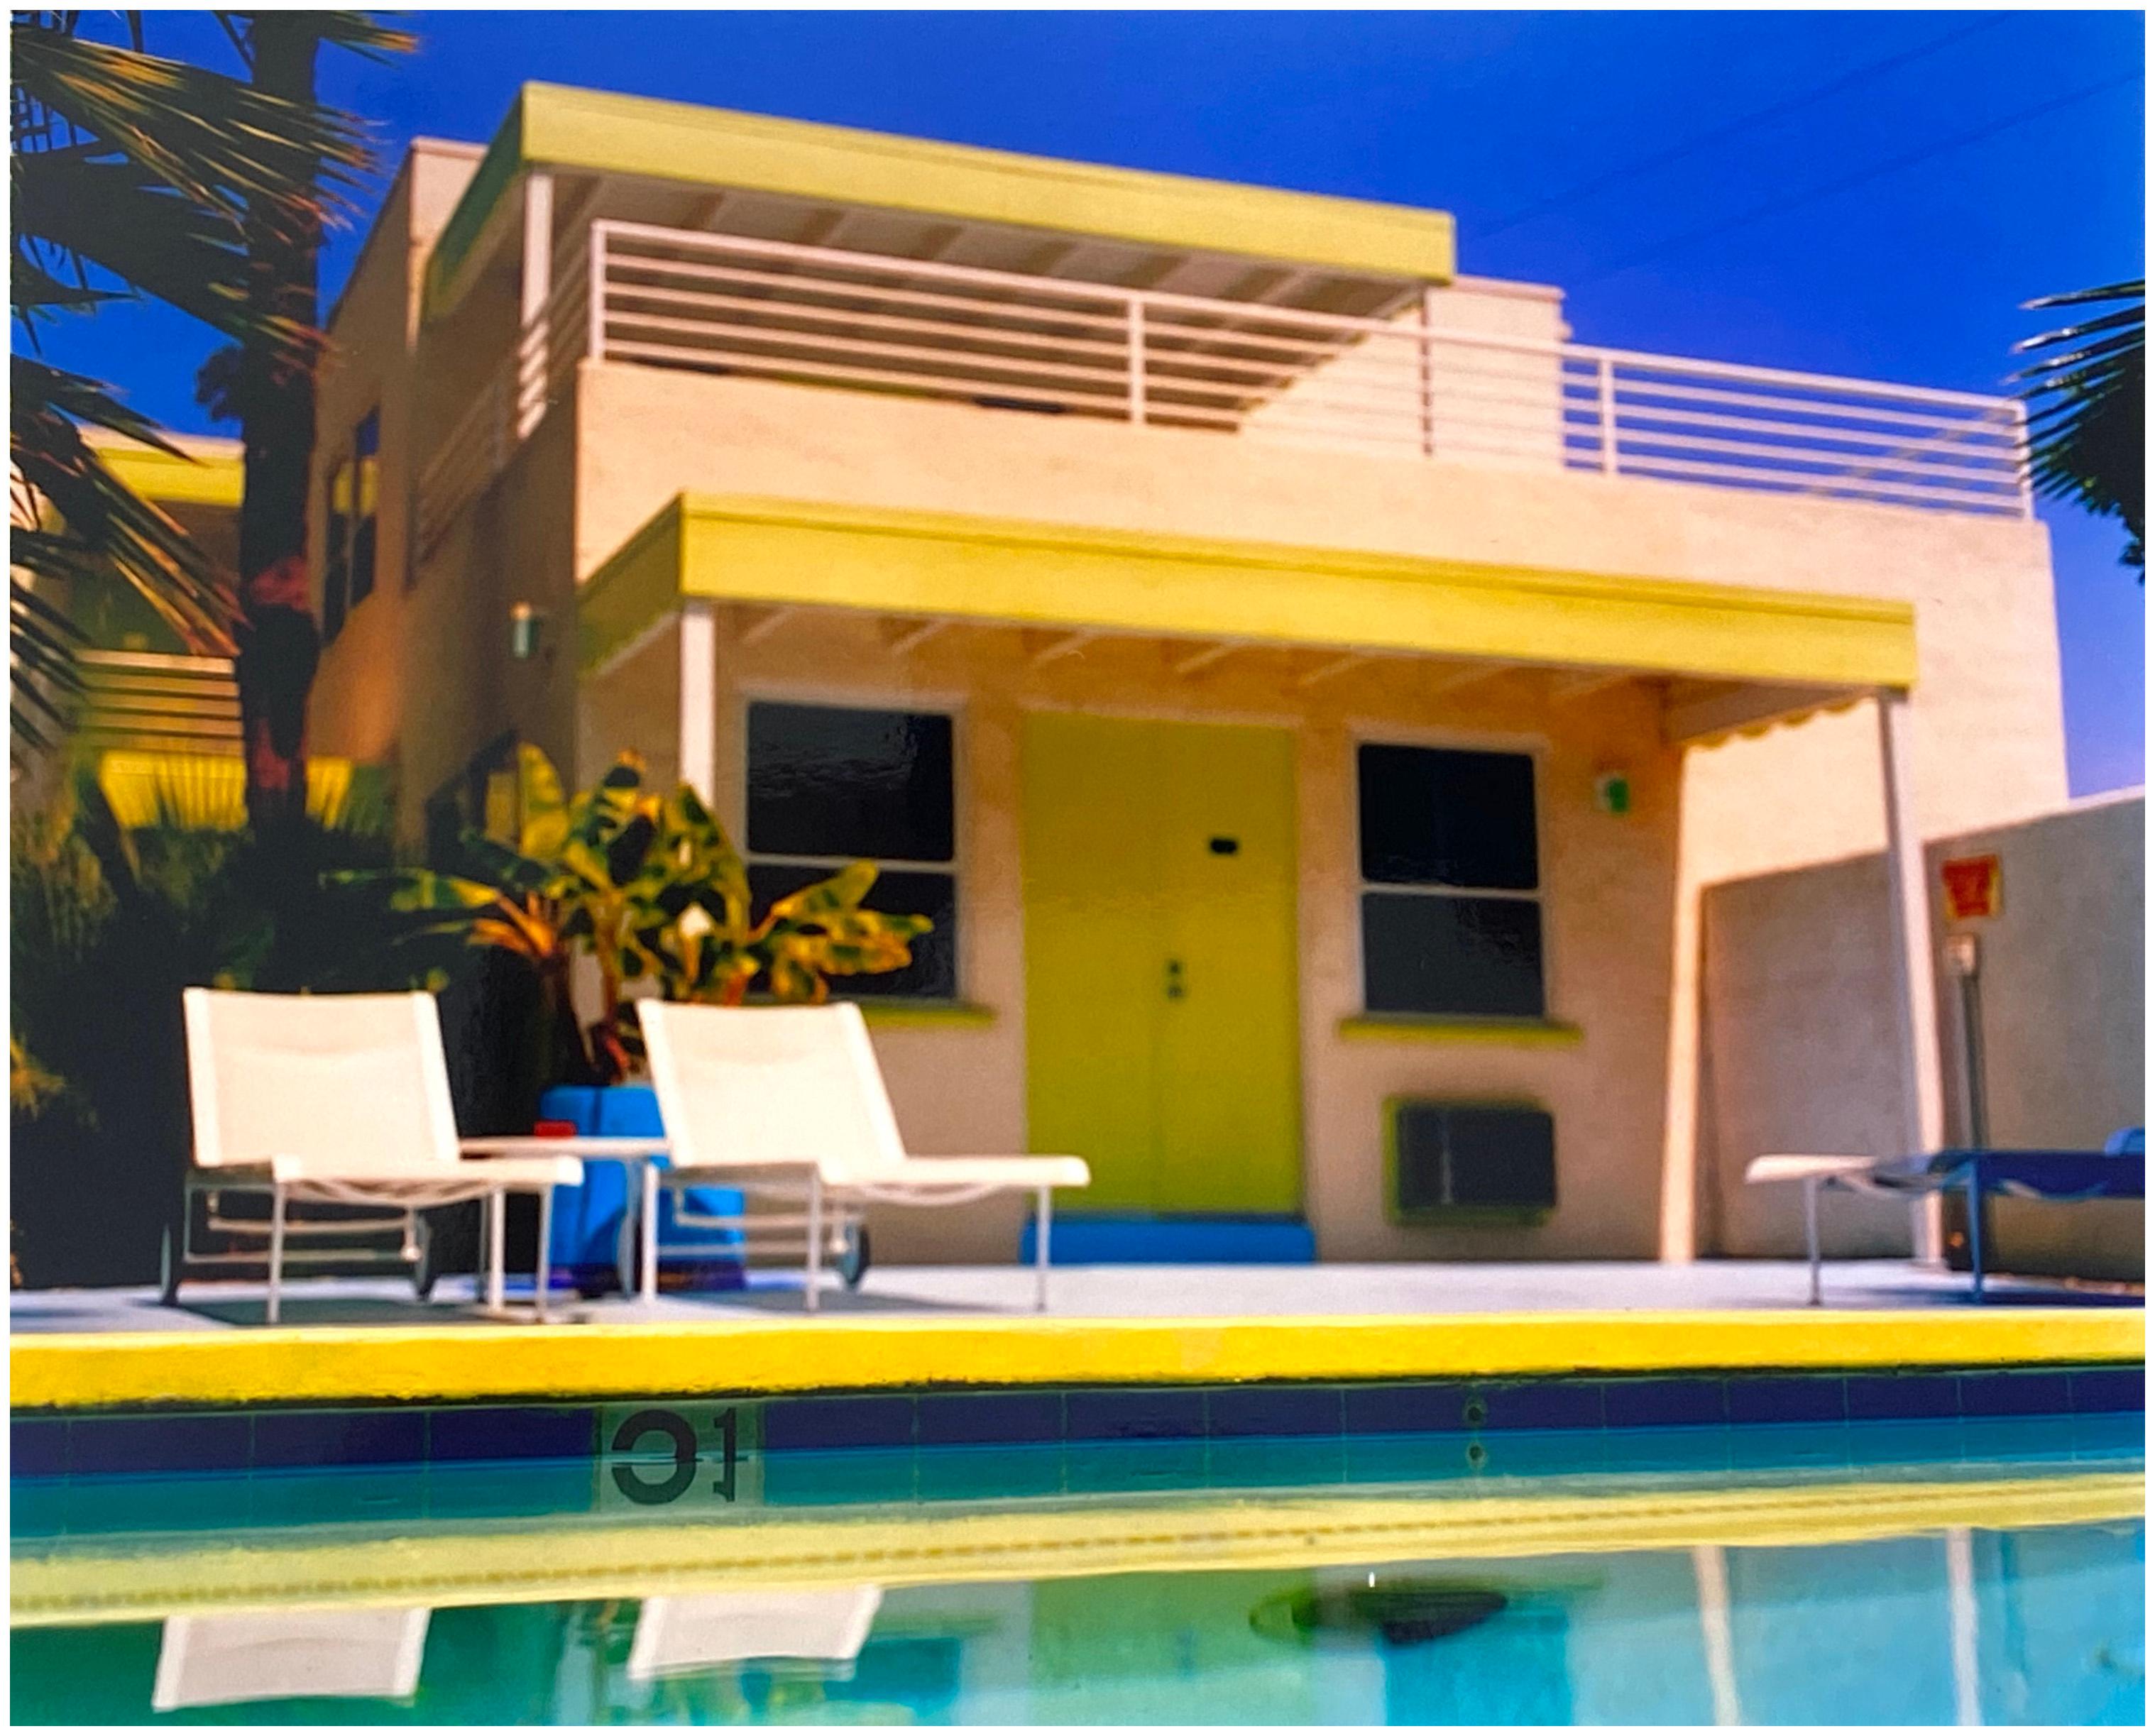 Palm Springs Poolside I, Californie - Photographie en couleur d'architecture américaine